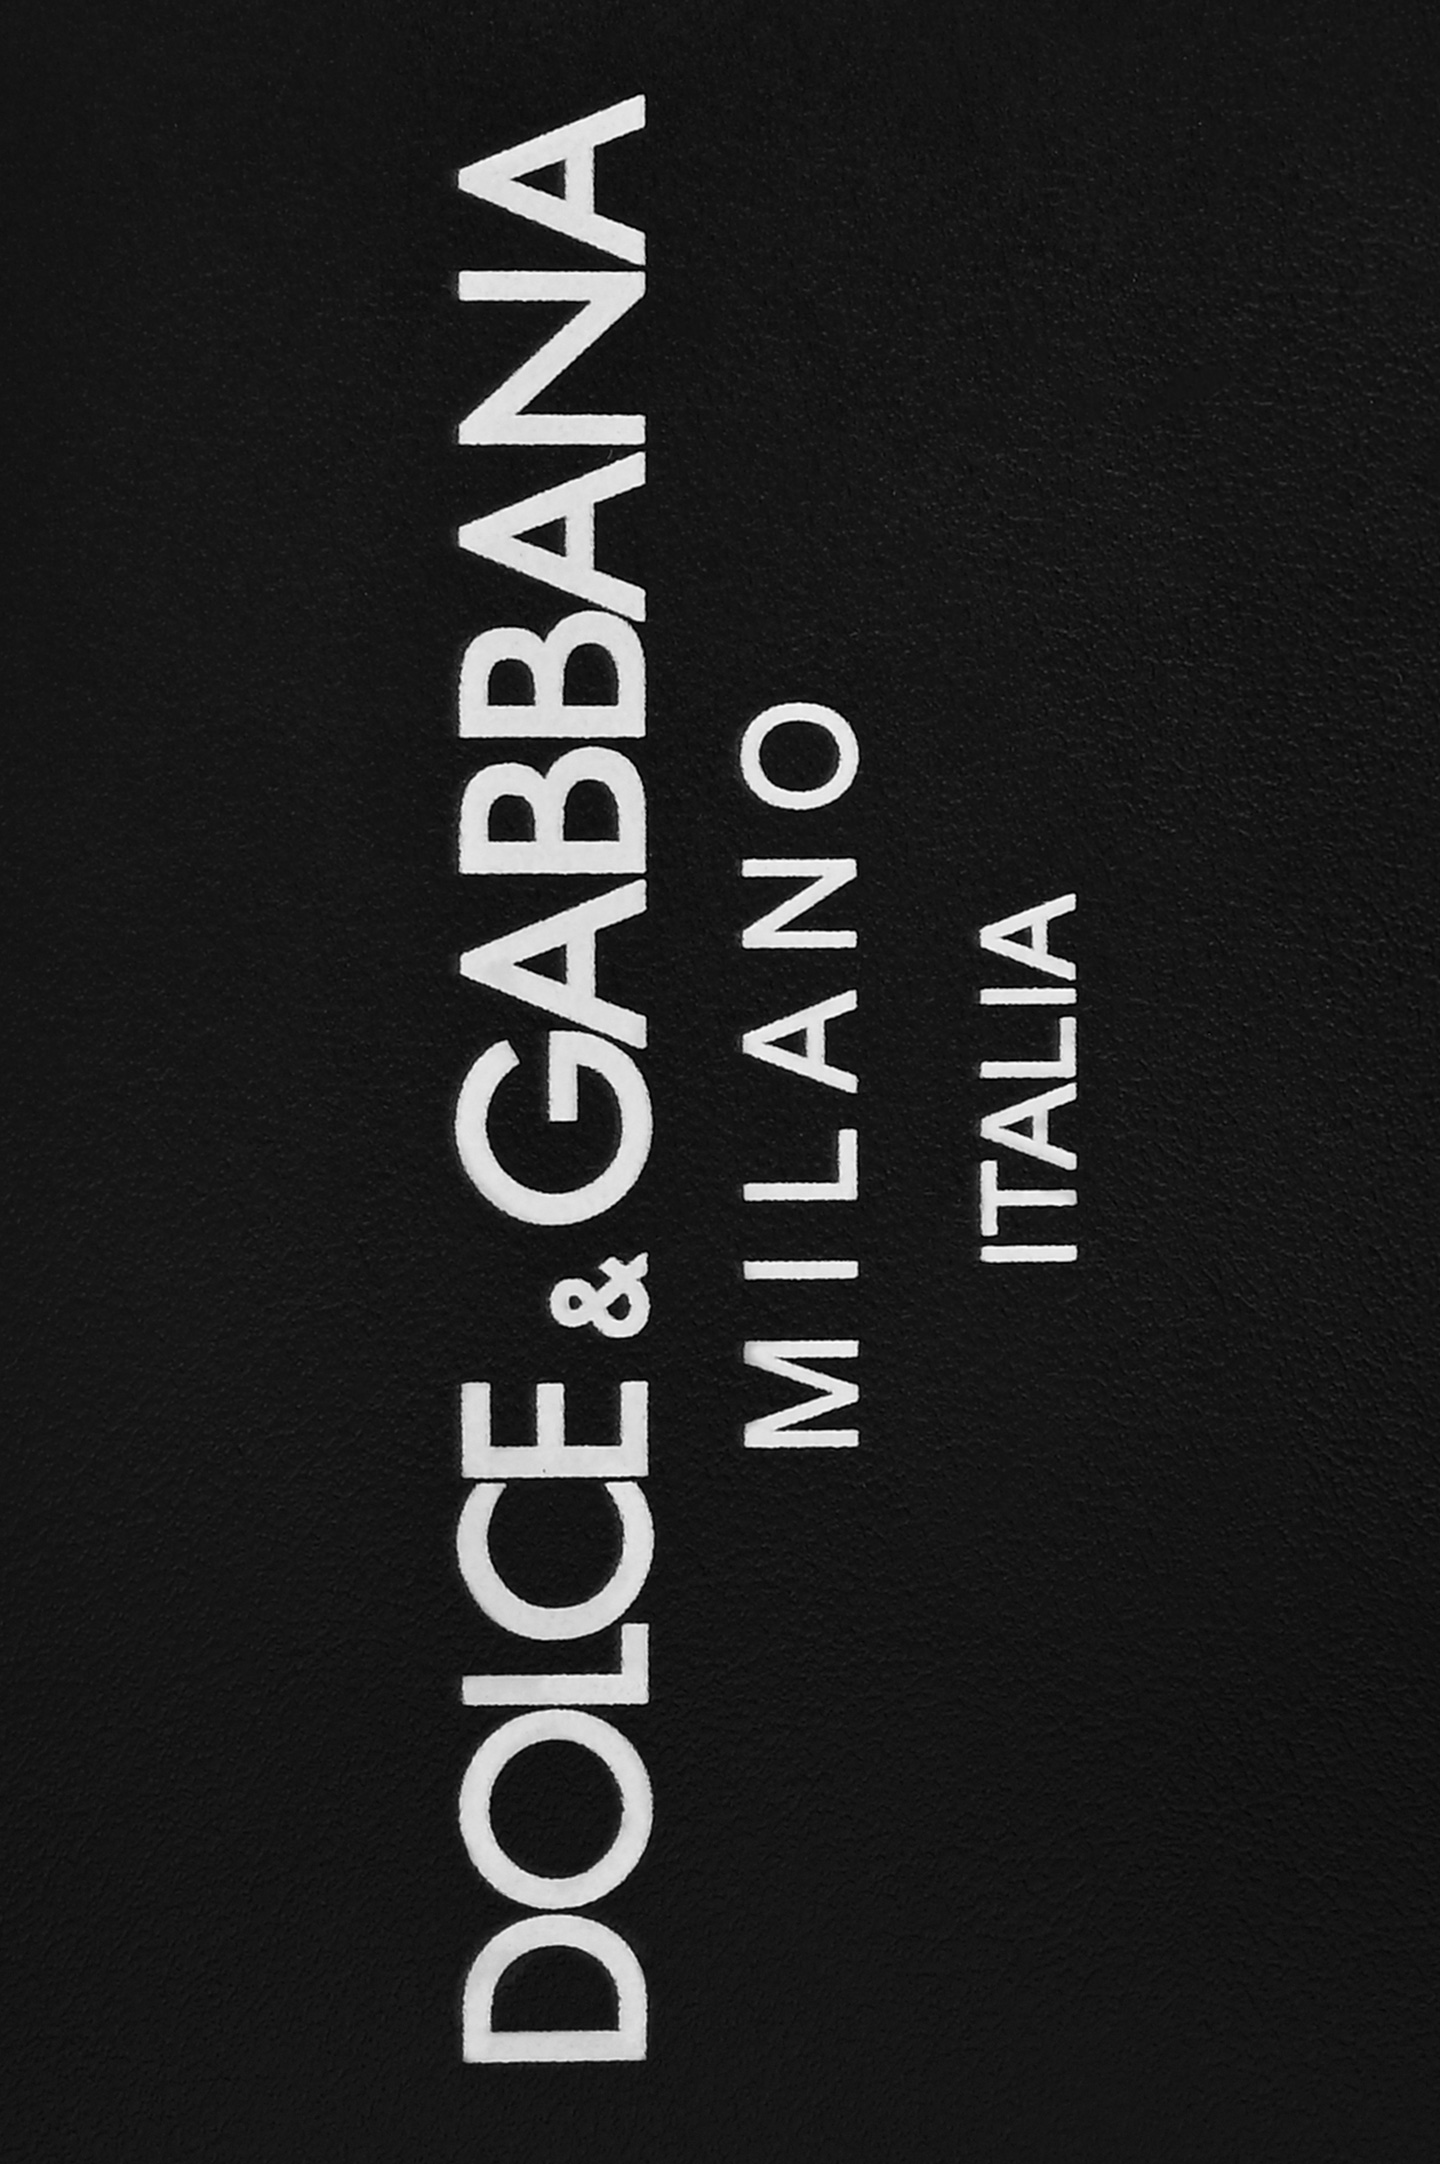 Обложка для паспорта DOLCE & GABBANA BP2215 AN244, цвет: Черный, Мужской